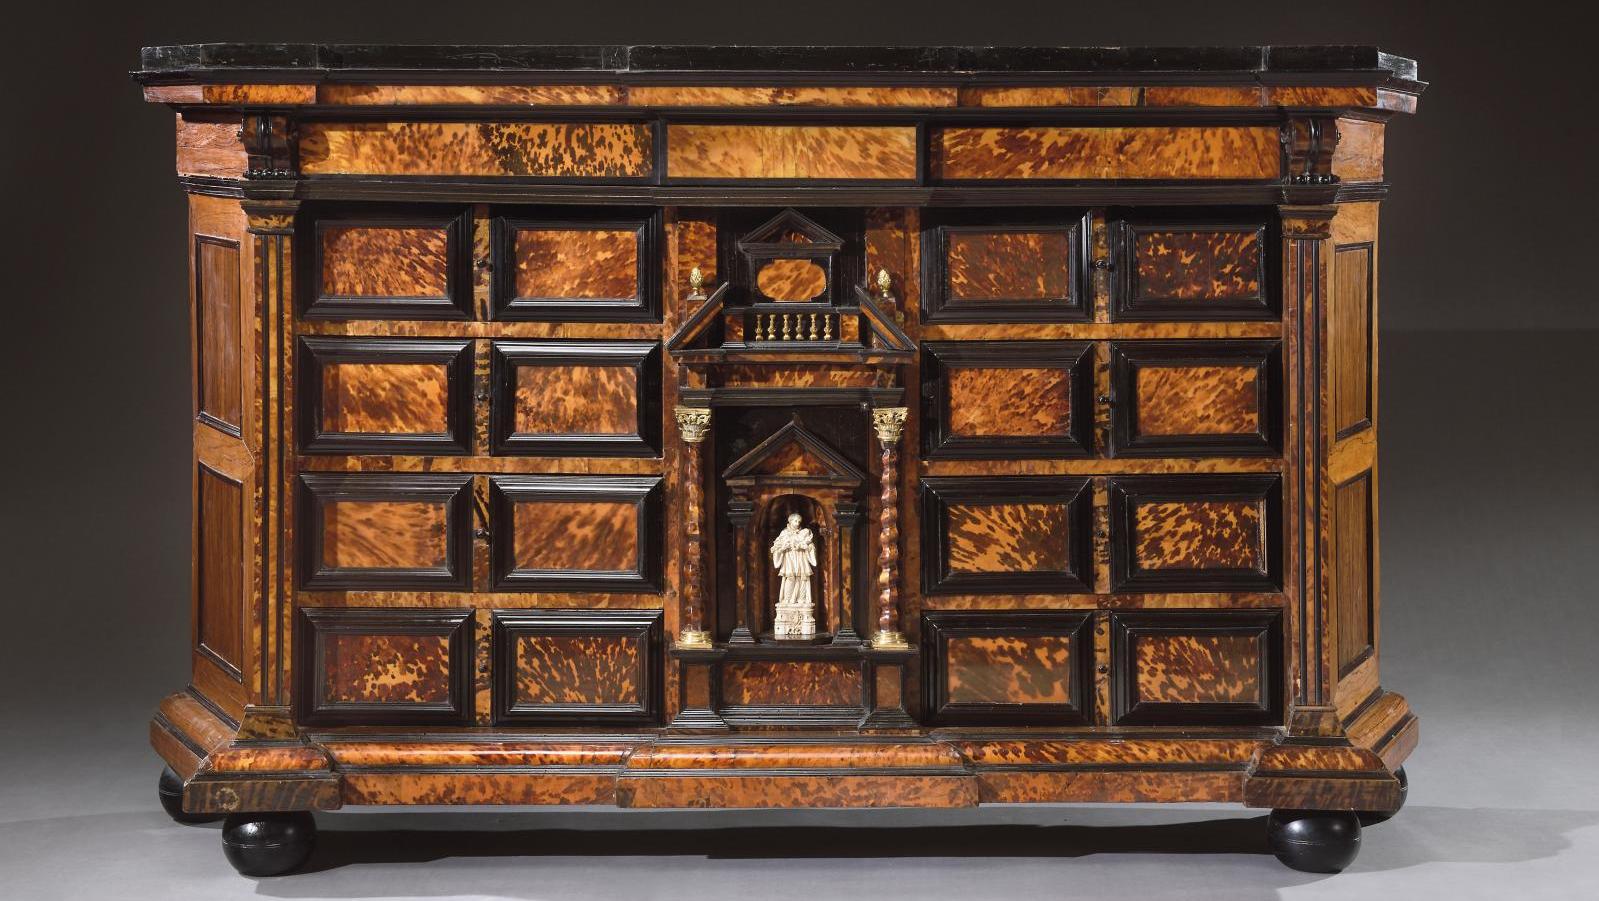 Allemagne, XVIIIe siècle. Cabinet en placage d’écaille blonde, palissandre, bois... La tradition allemande du cabinet